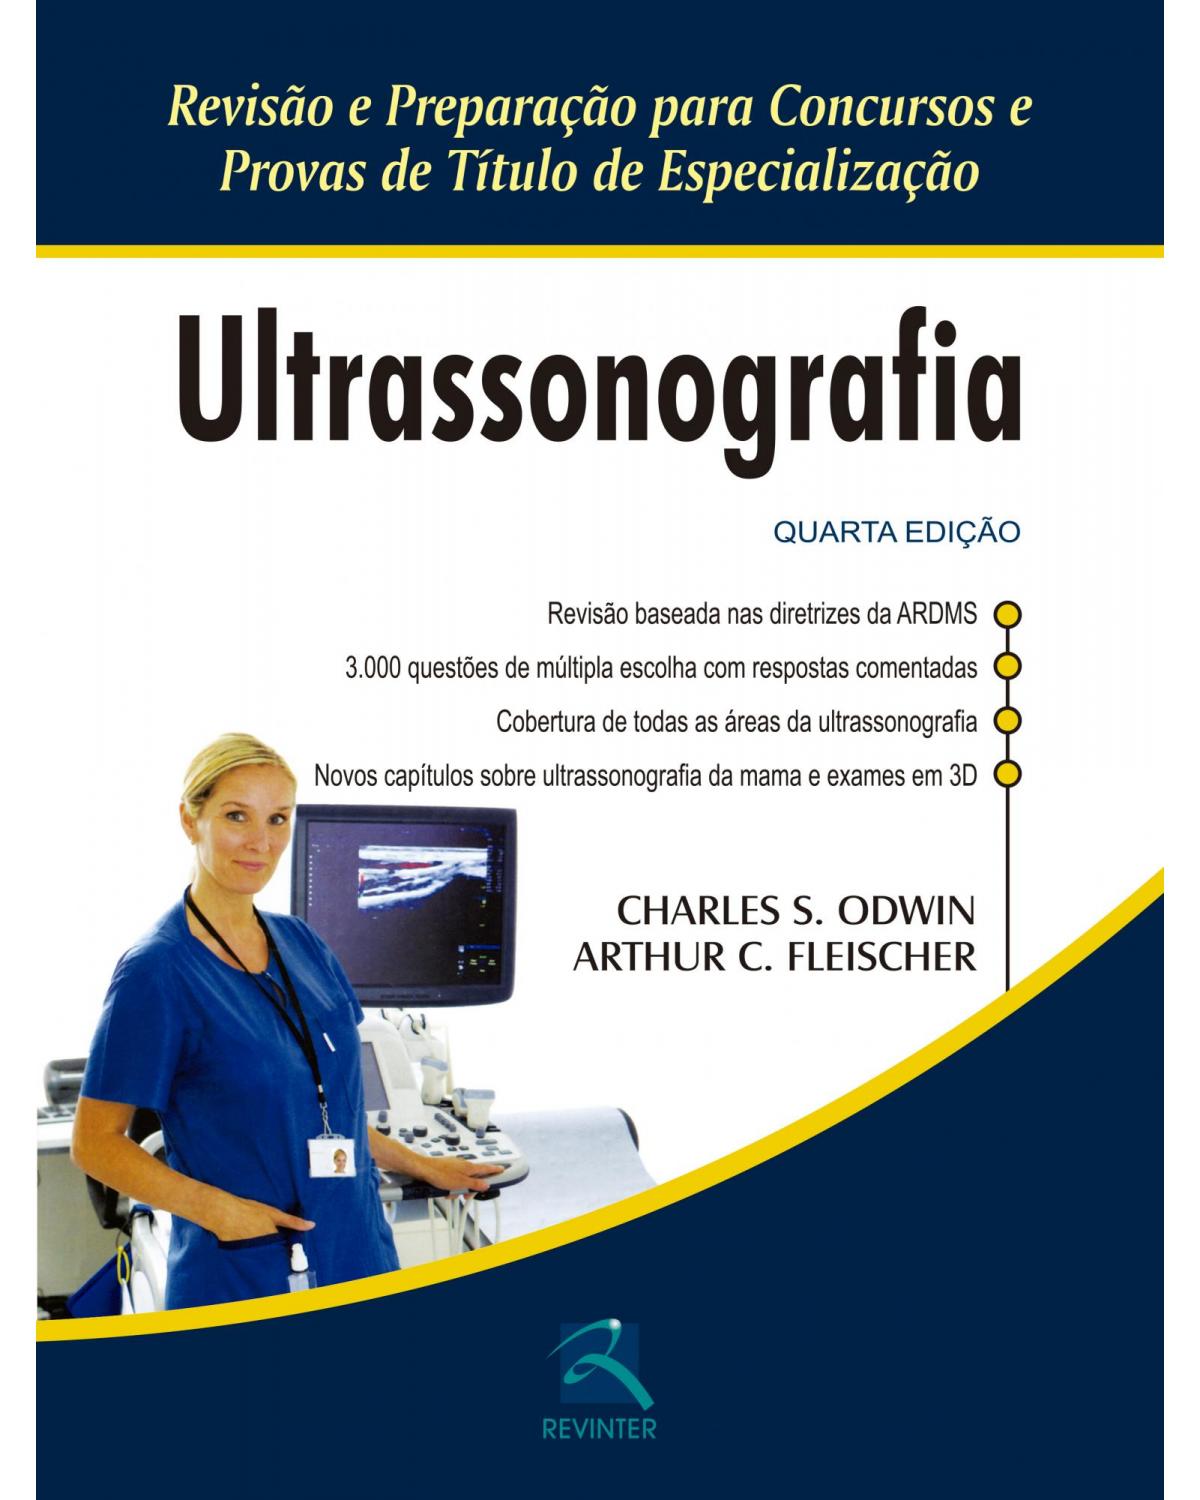 Ultrassonografia - Revisão e Preparação para Concursos e Provas de Título de Especialização - 4ª Edição | 2016